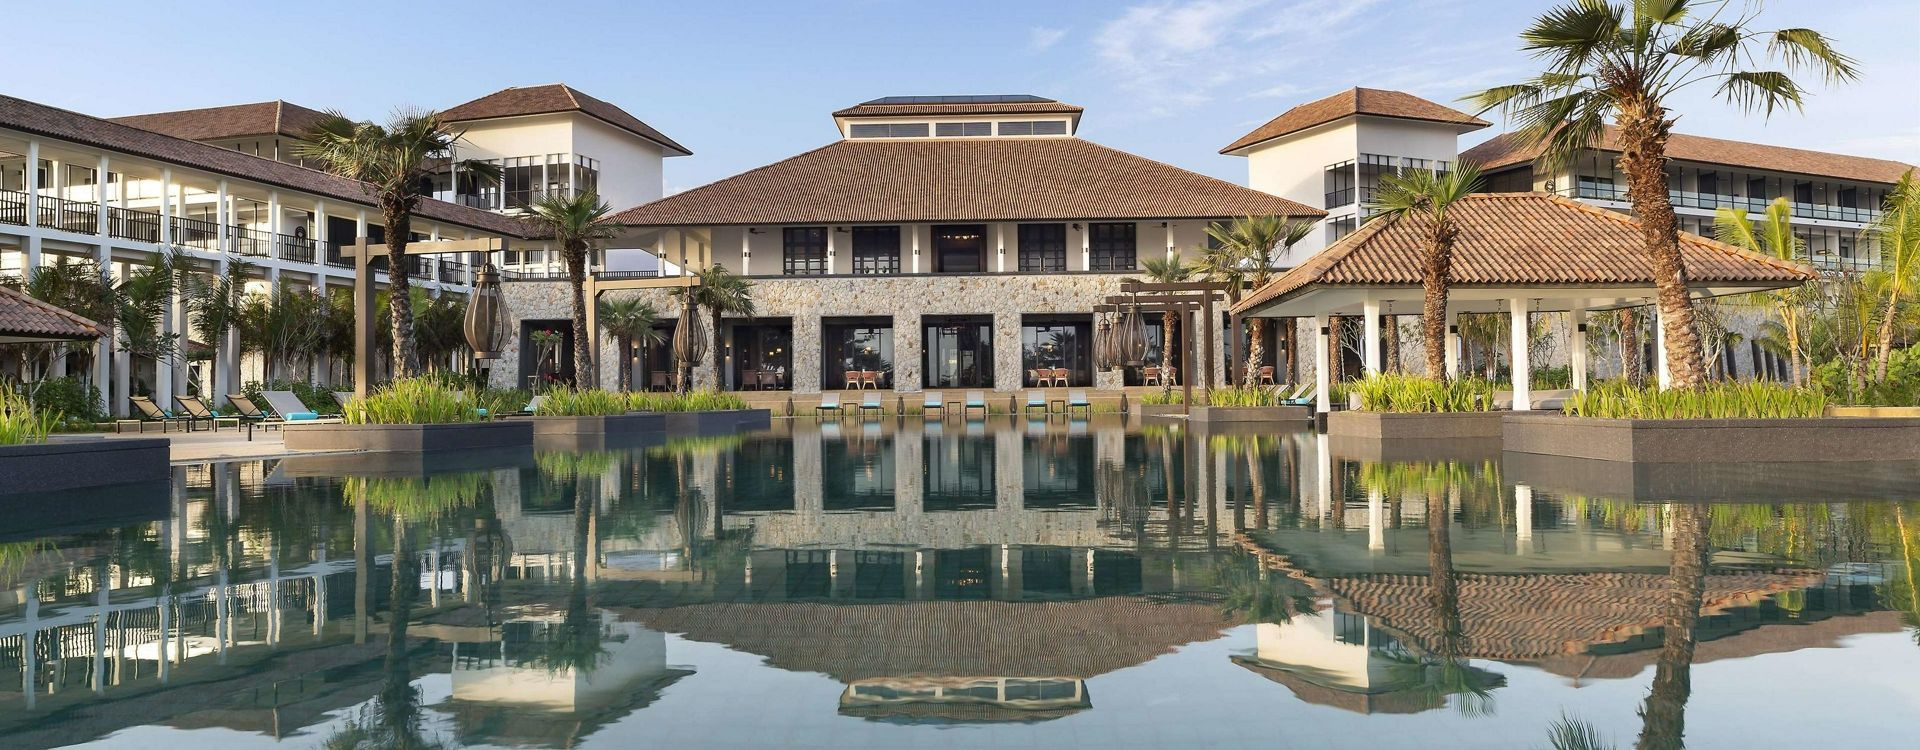 Anantara Desaru Coast Resort & Villas-Location shots.jpg